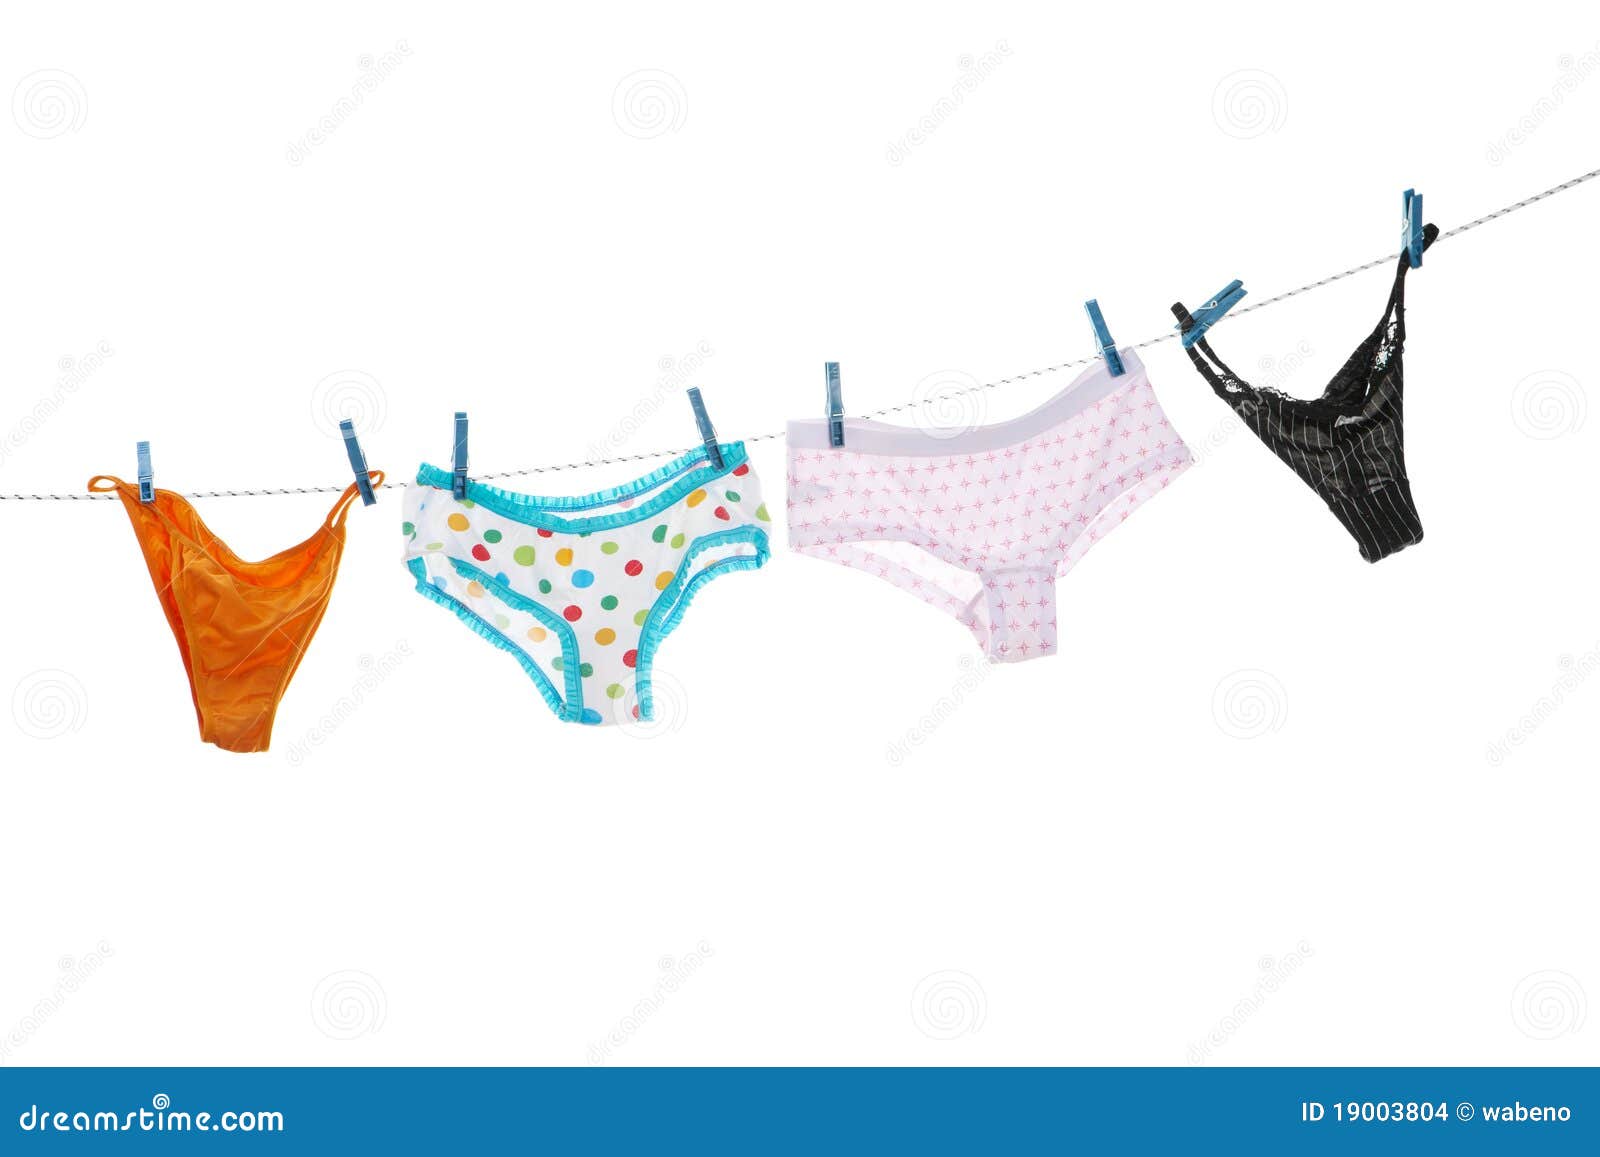 clipart underwear free - photo #35